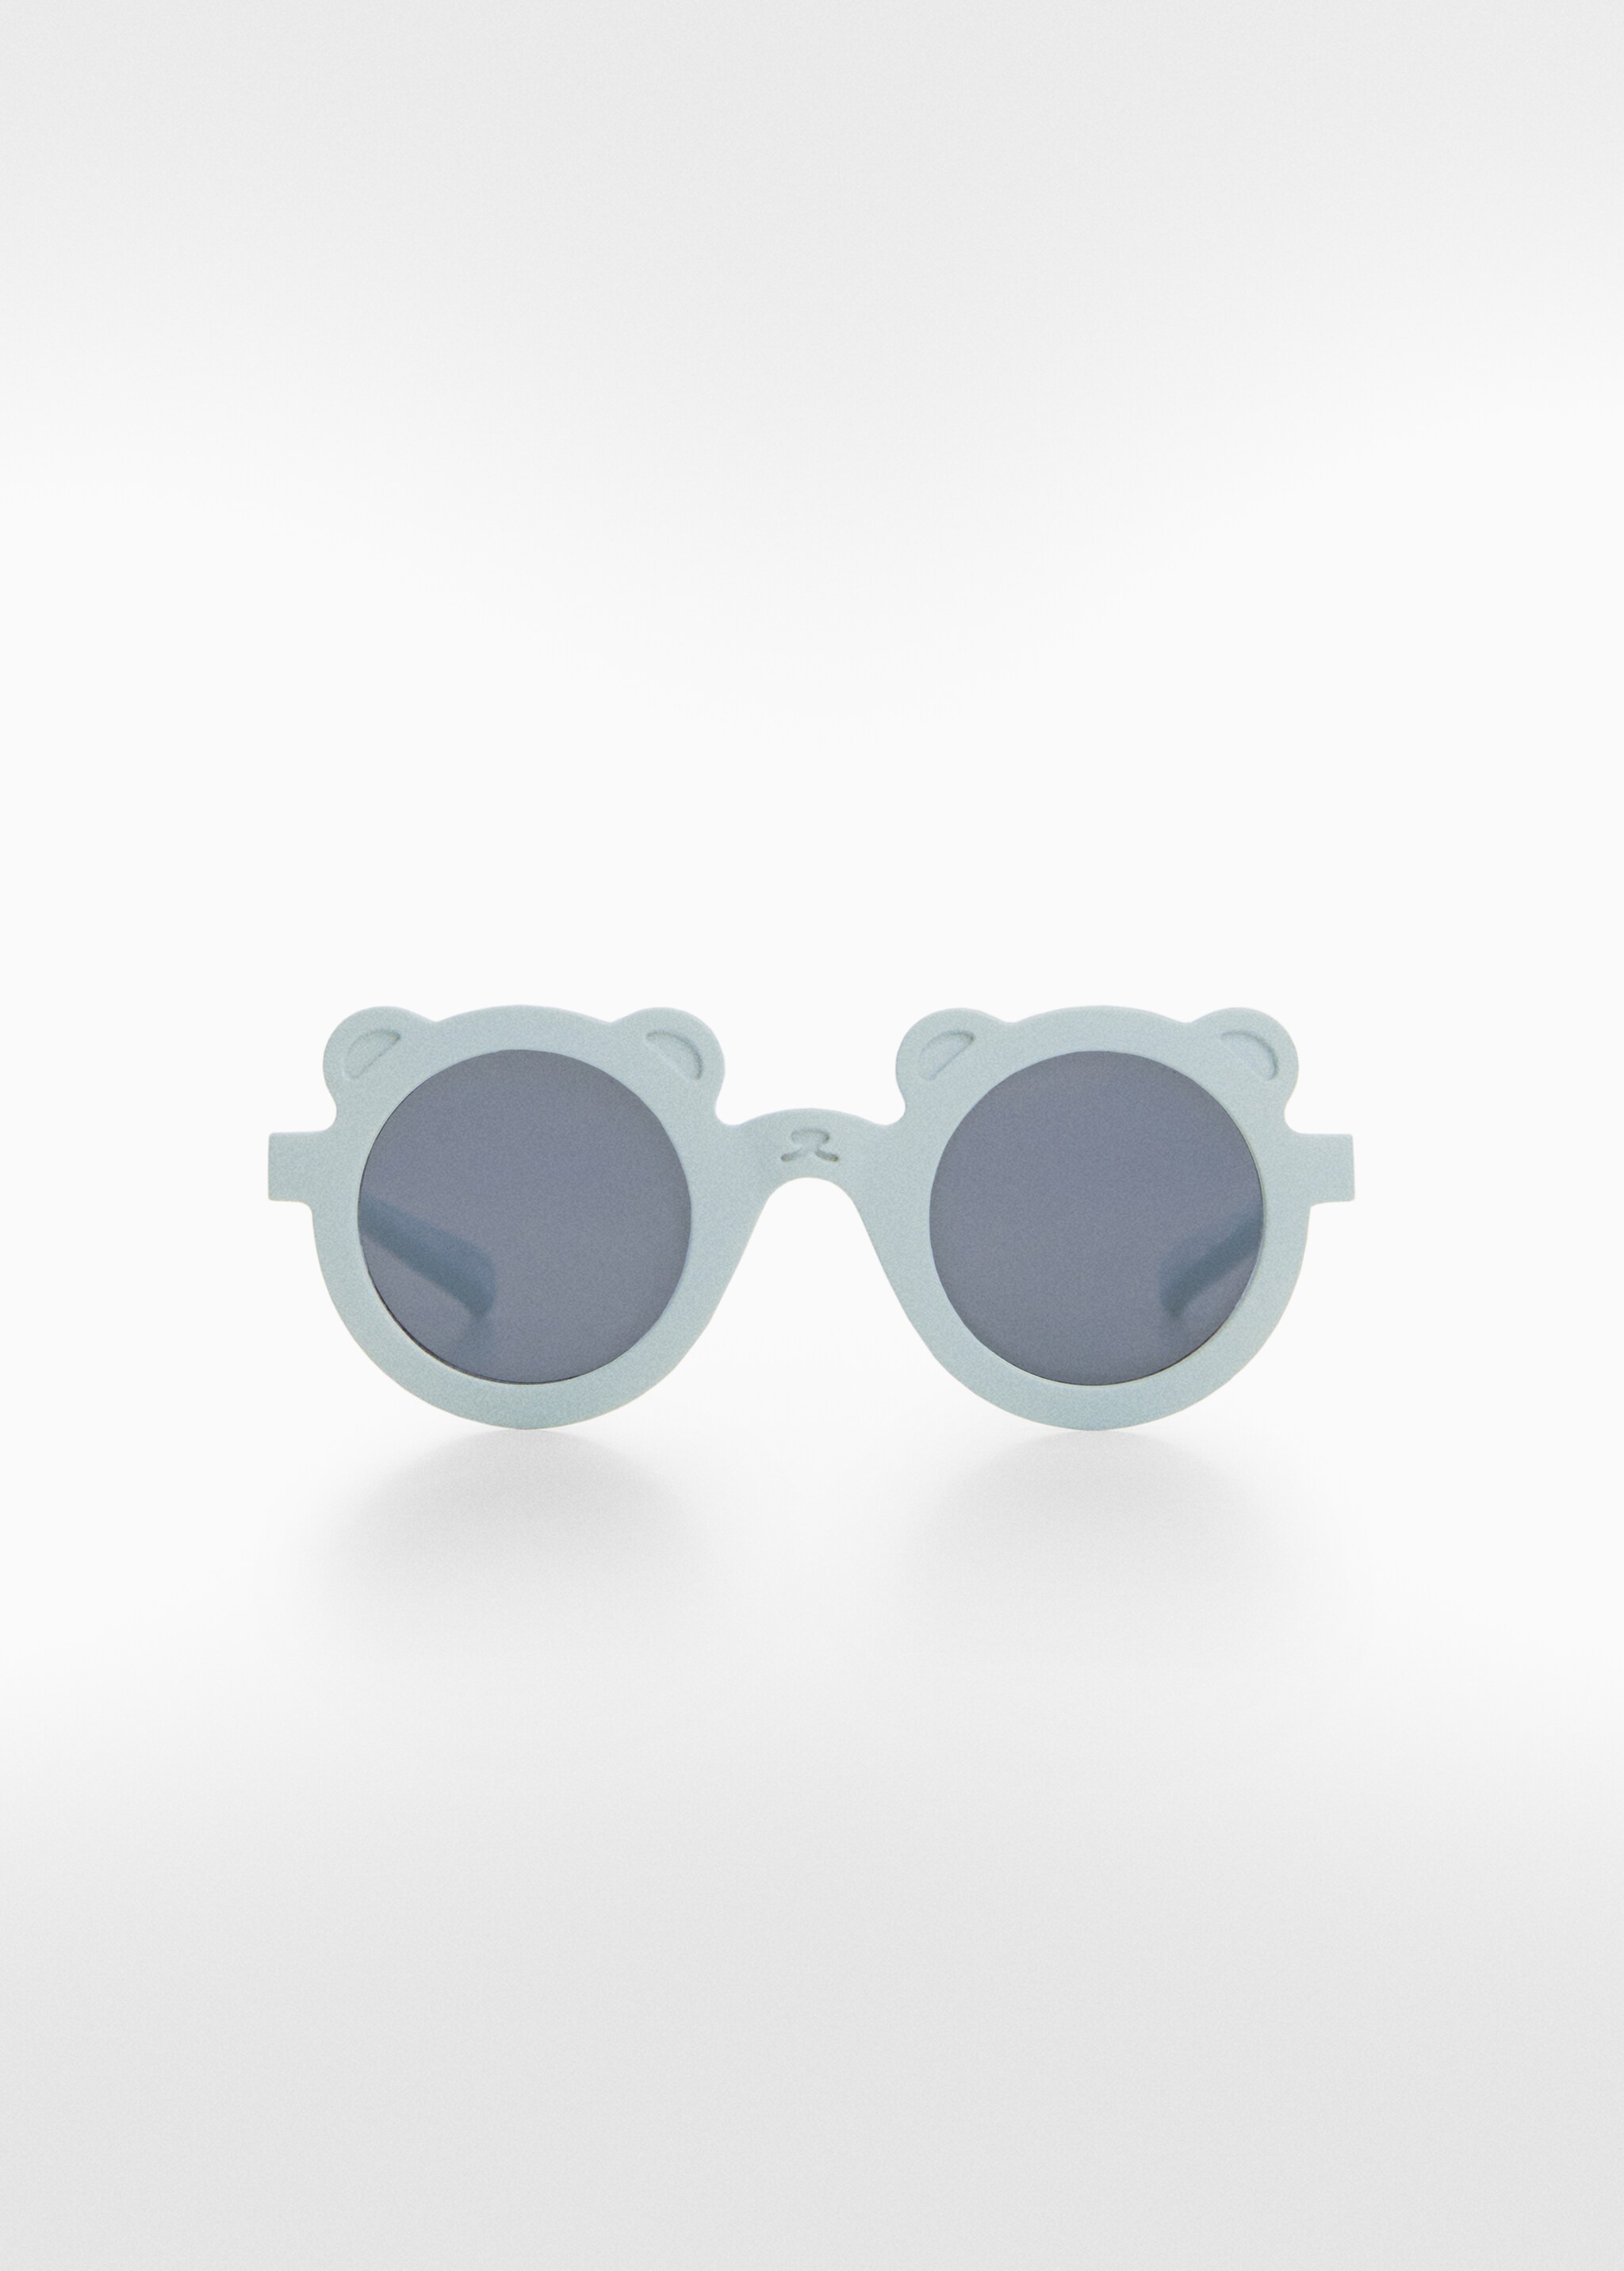 نظارة شمسية Teddy bear - منتج دون نموذج